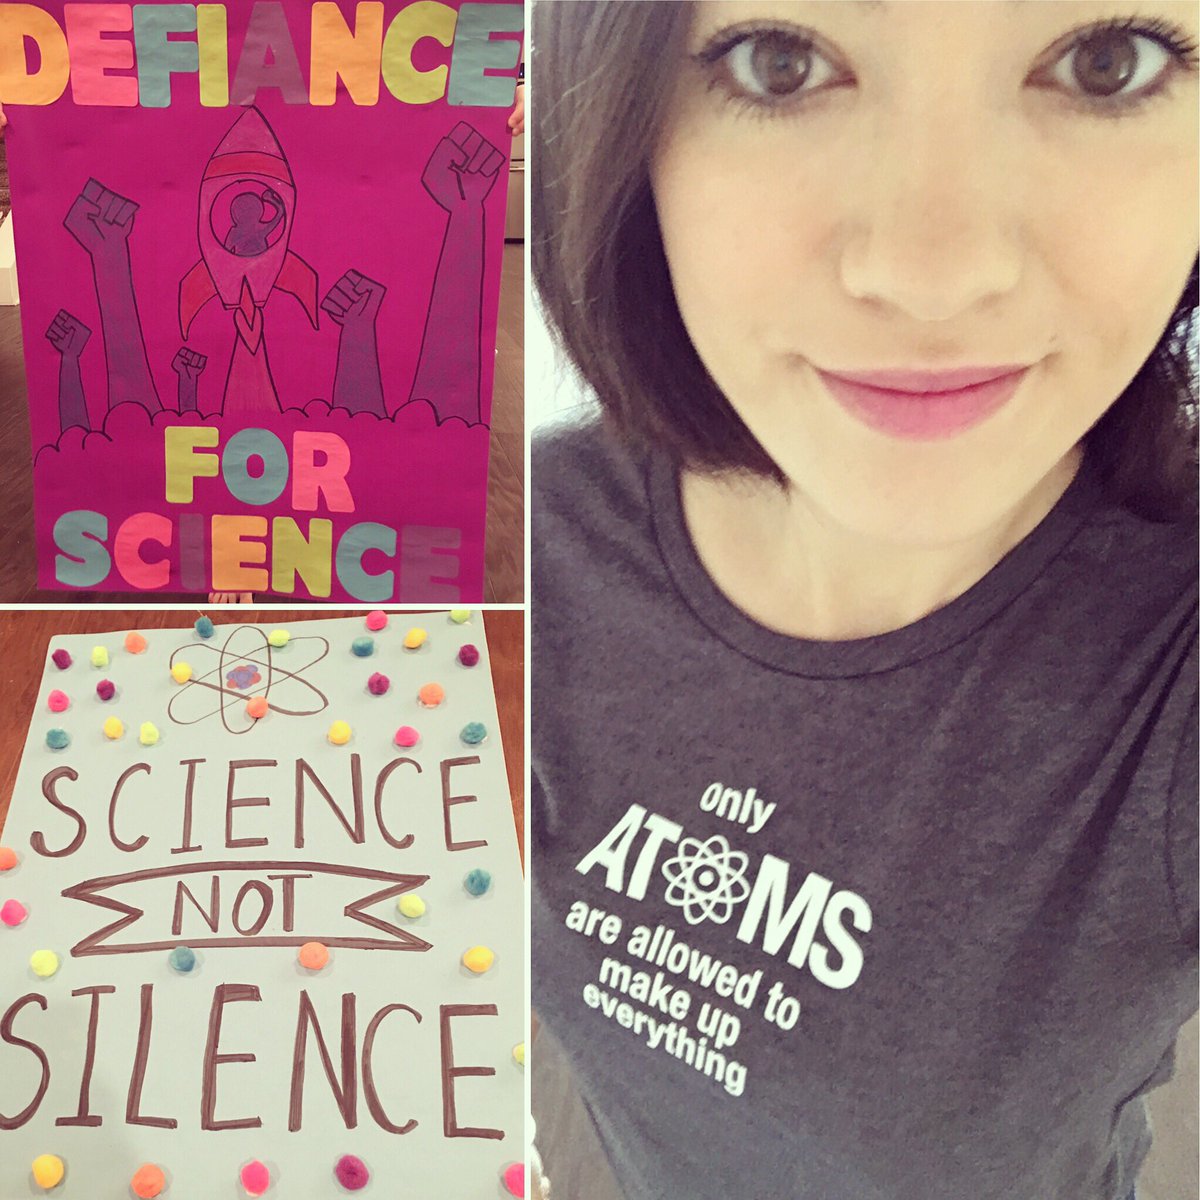 #MarchForScience ready! @MFSCharleston #DefianceForScience #ScienceNotSilence #Resist #StandUpForScience tshirt from @ewsbrand #charleston